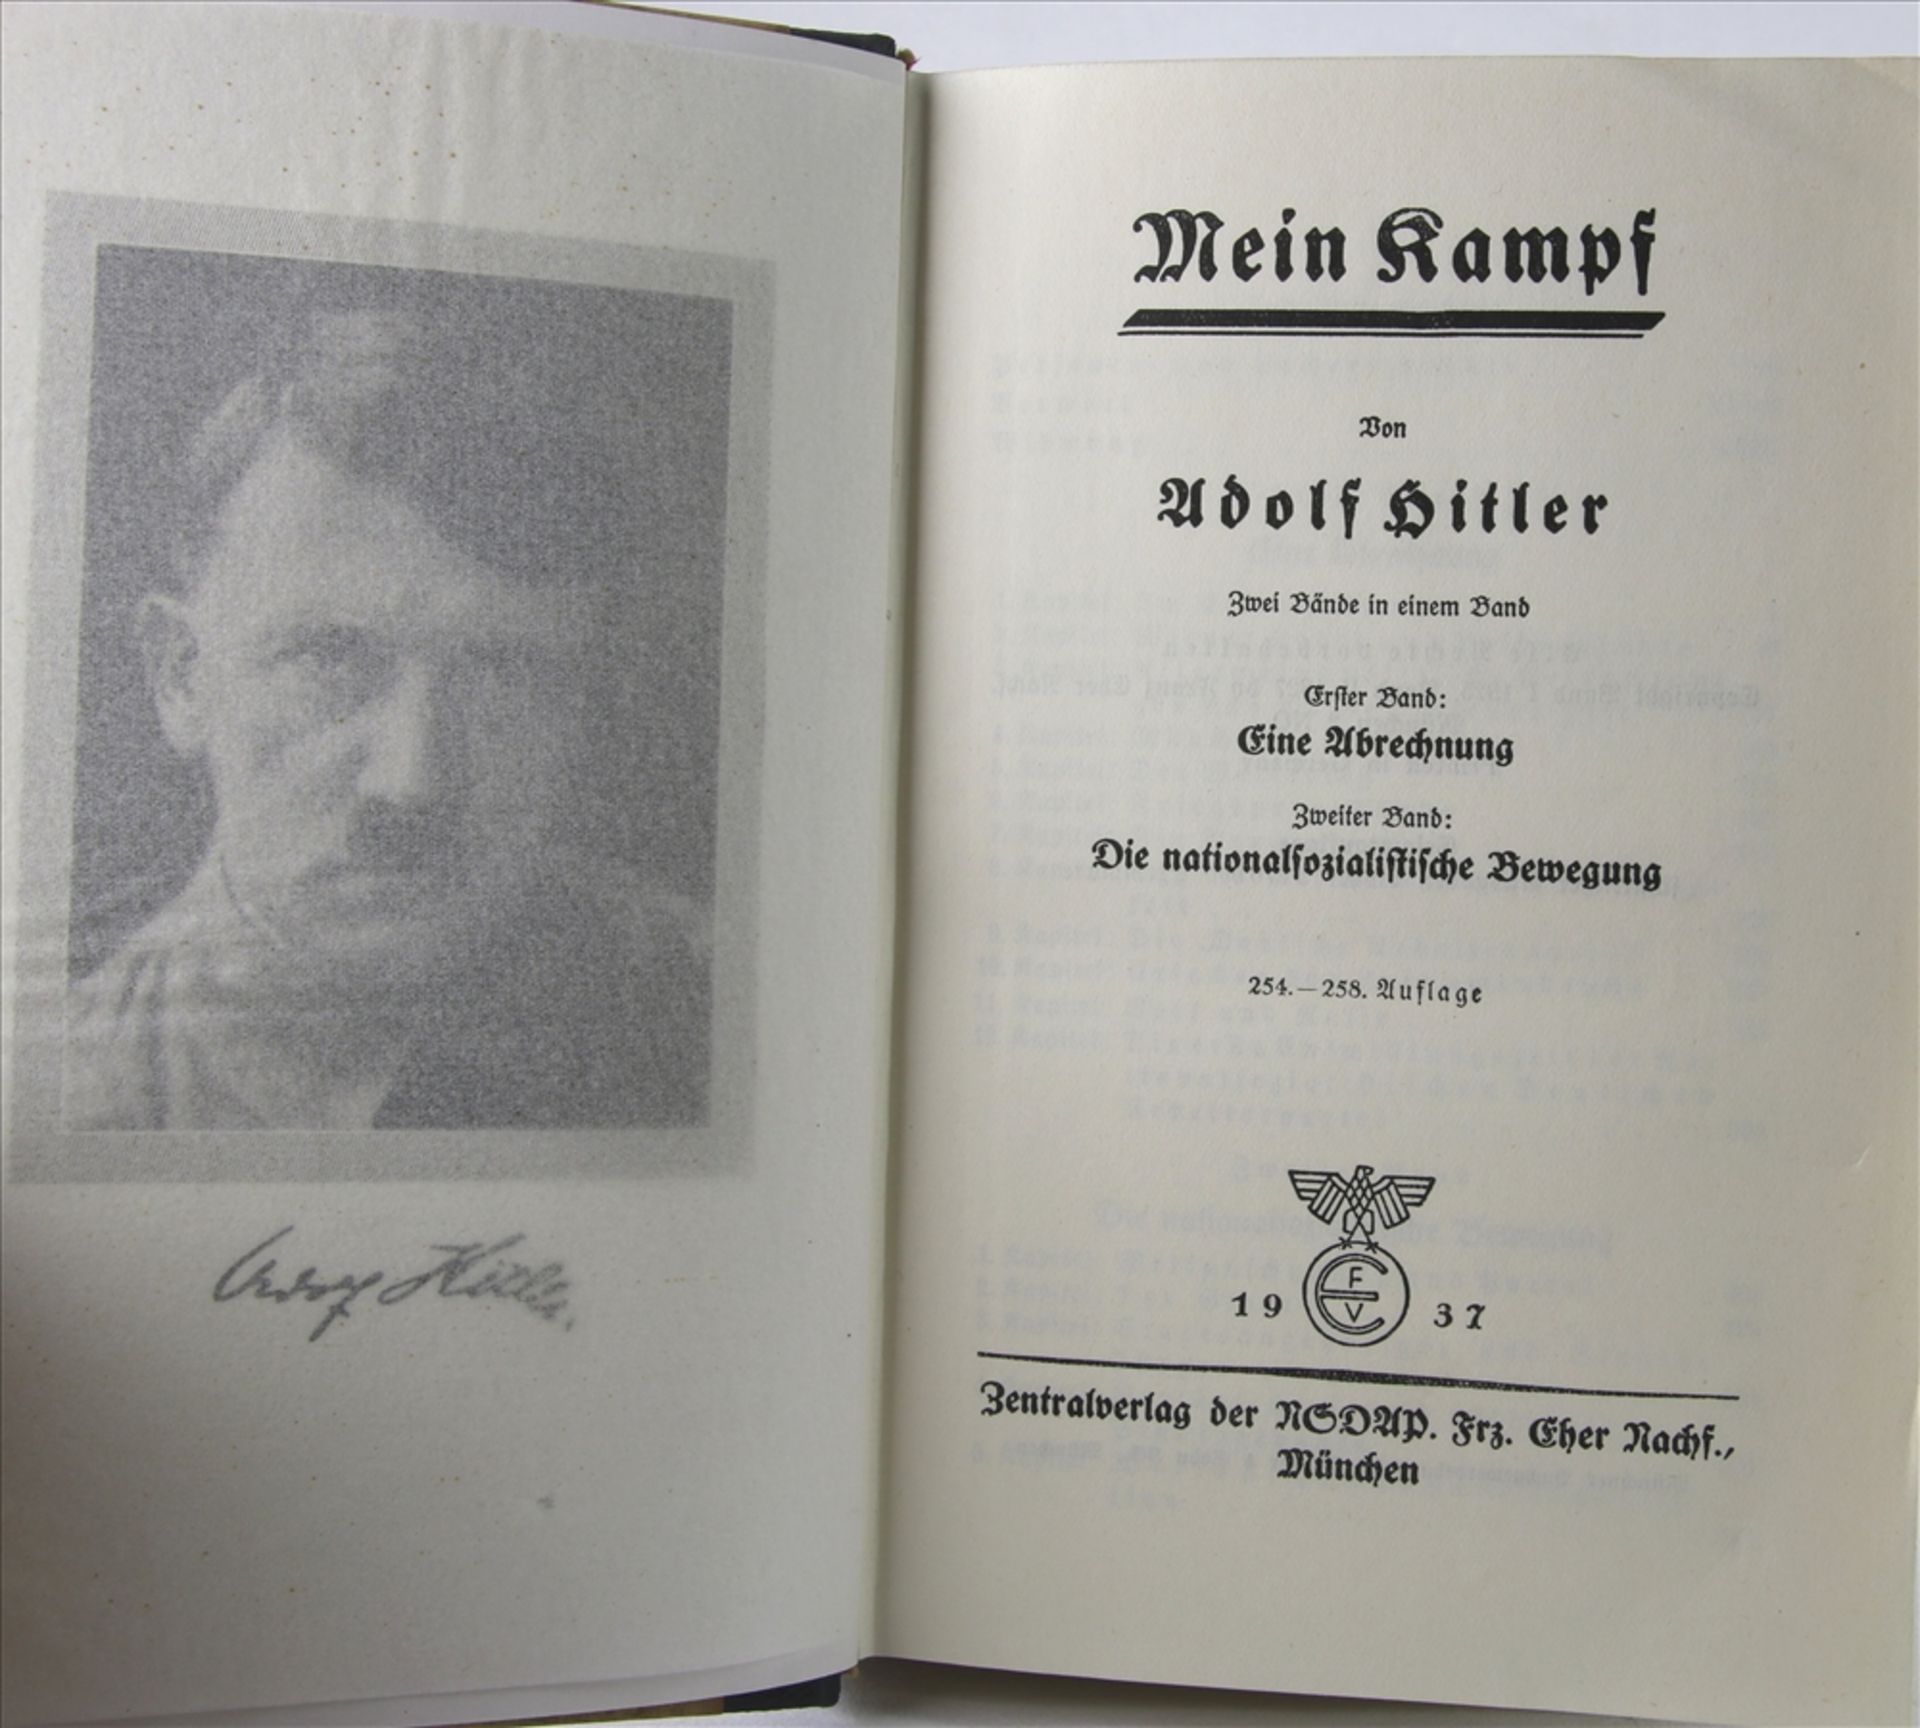 Adolf Hitler Mein Kampf. Hochzeitsausgabe. Eher Verlag 1937. MIt Widmung auf Vorsatz. - Bild 2 aus 3